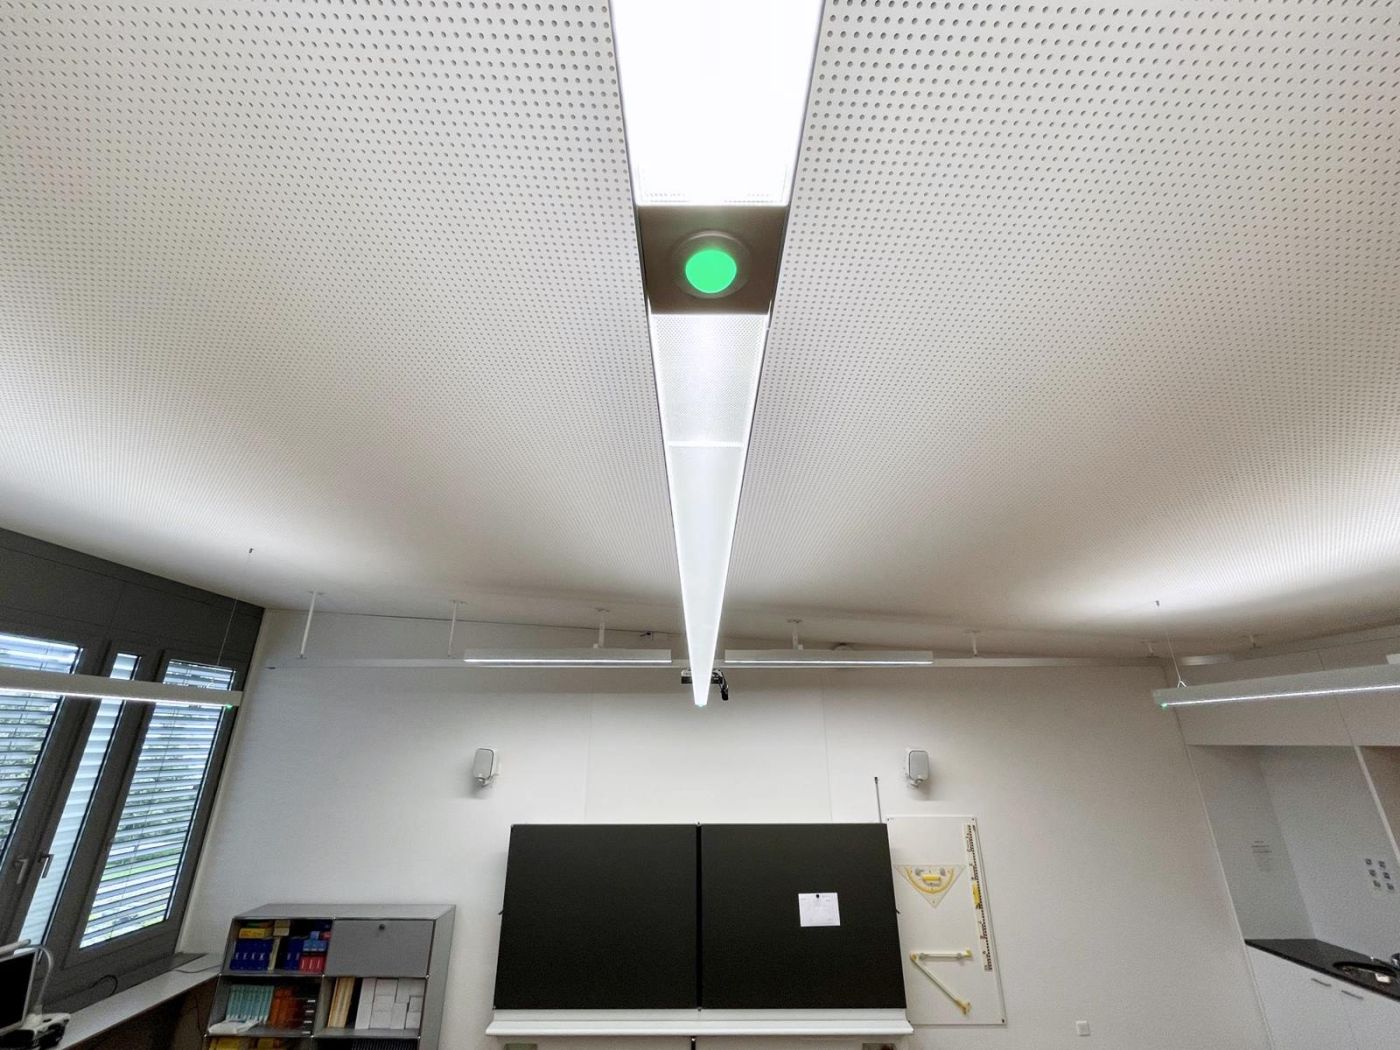 École secondaire Sennweid : Luminaire à commande intelligente intégrée de l’éclairage